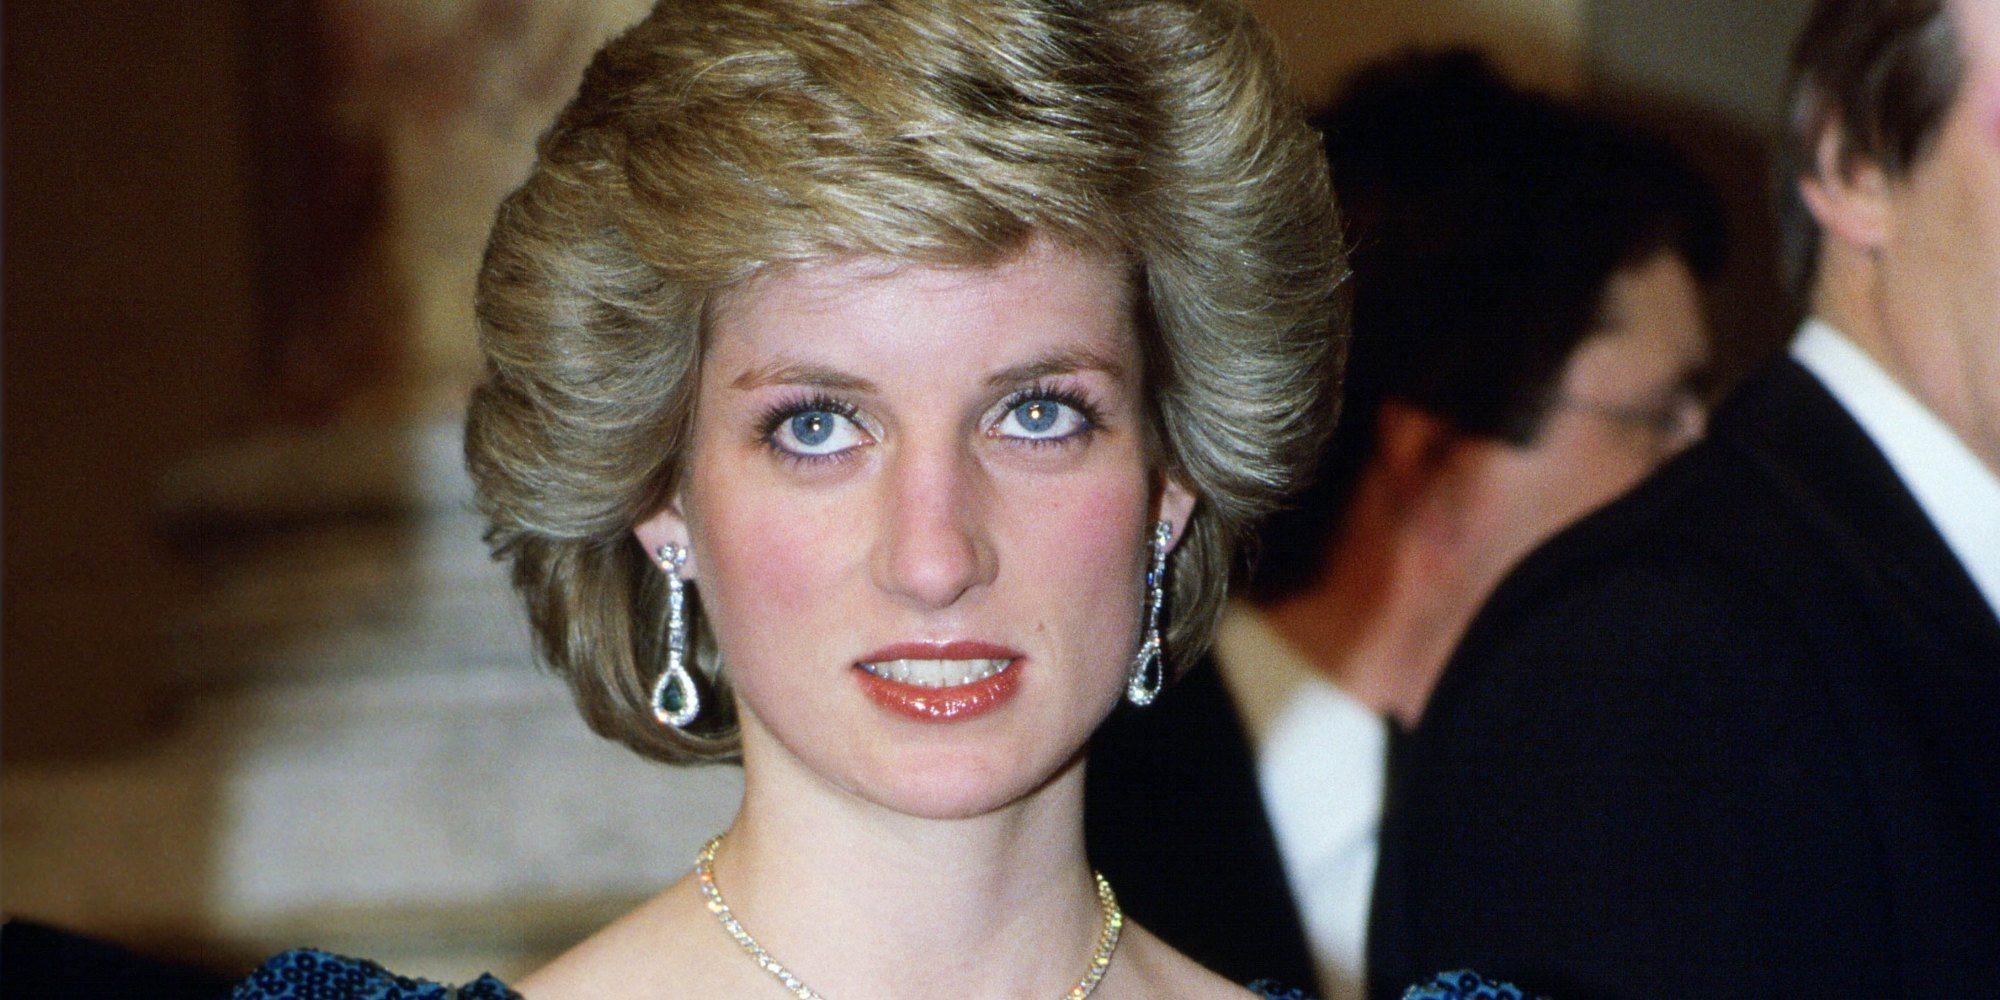 Princess Diana Wallpapers Wallpaper Cave Images, Photos, Reviews